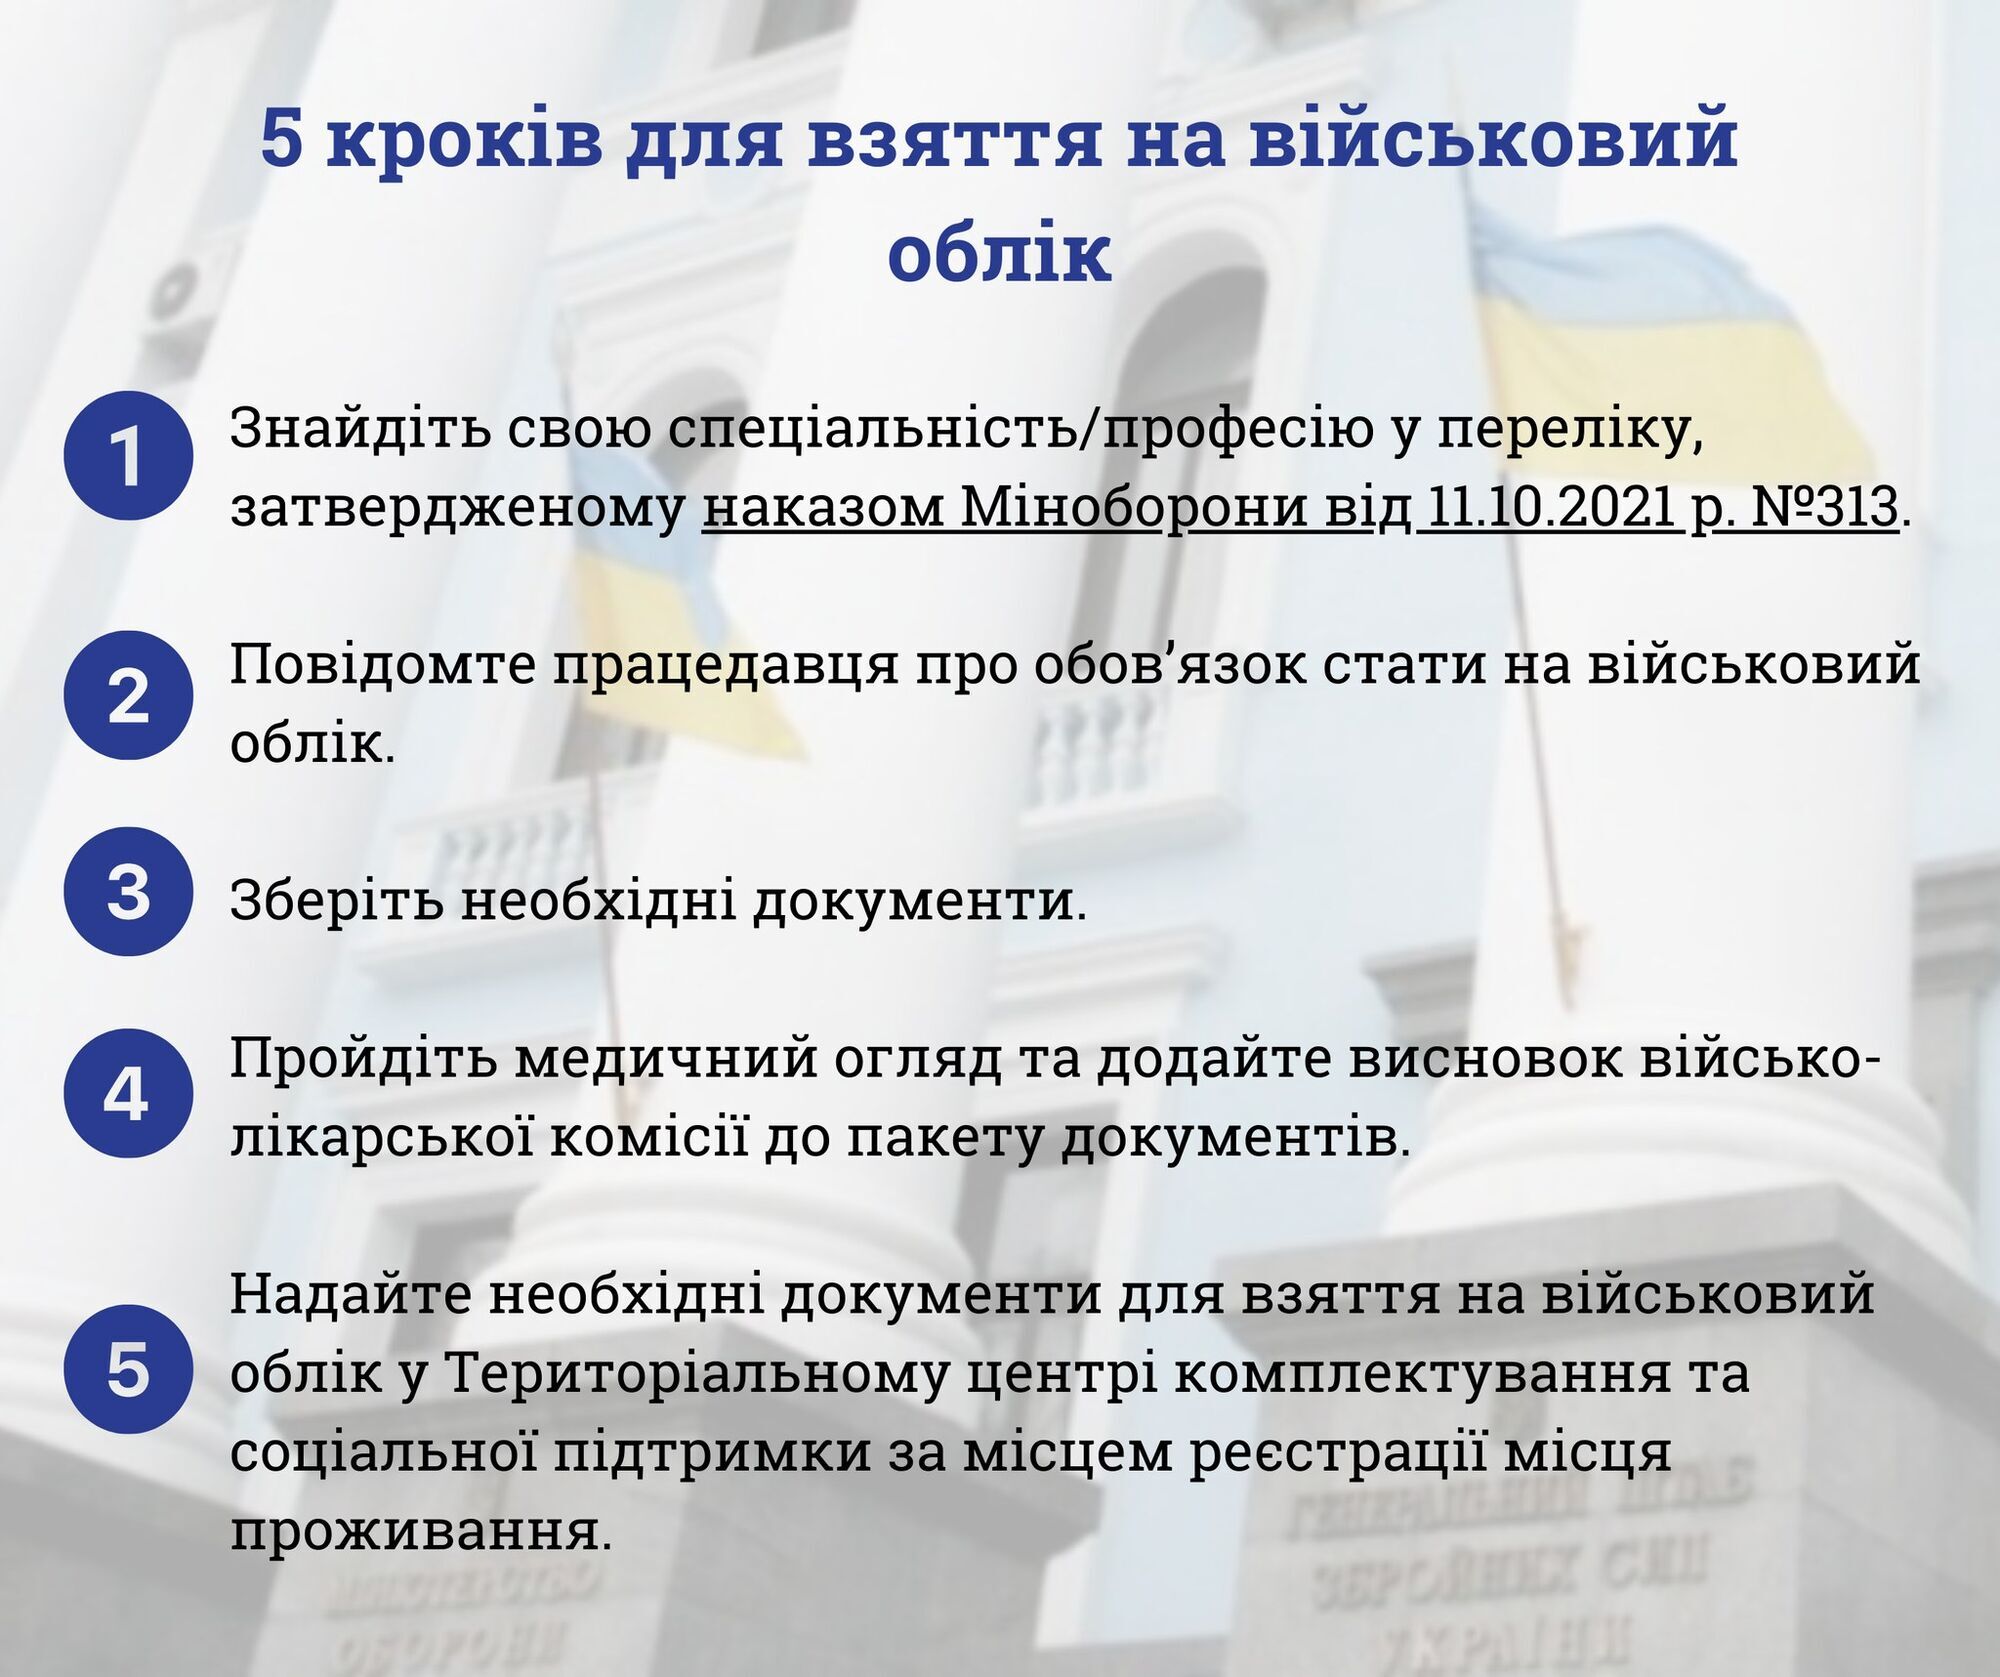 На Официальной странице Управления стратегических коммуникаций Аппарата Главнокомандующего Вооруженными силами Украины опубликовали разъяснения.